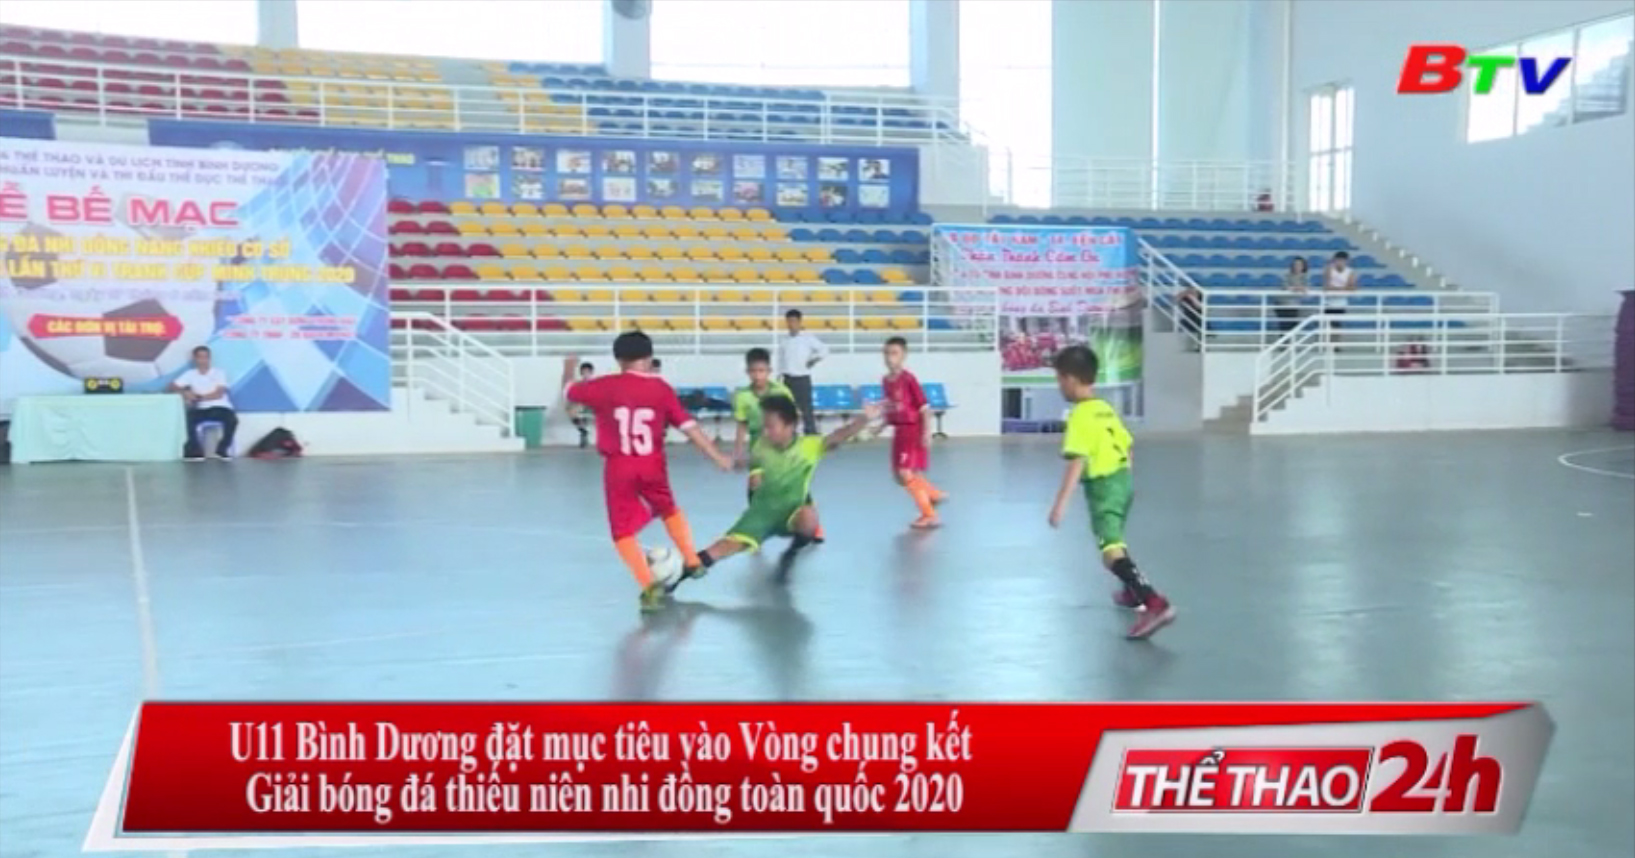 U11 Bình Dương đặt mục tiêu vào Vòng chung kết Giải bóng đá thiếu niên nhi đồng toàn quốc 2020